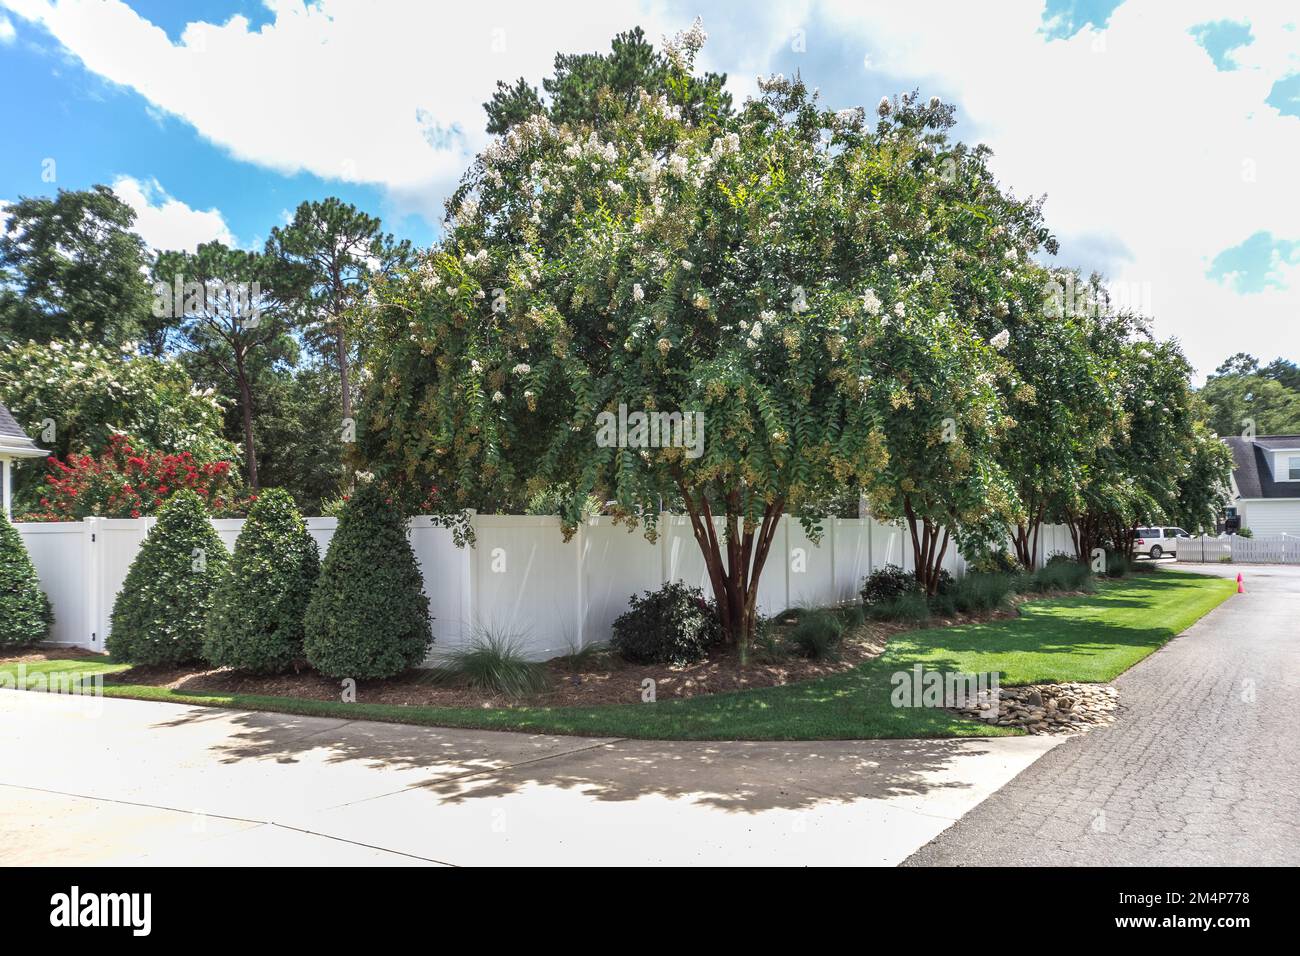 Primo piano immagine di un albero paesaggistico e arbusti intorno a una recinzione in pvc bianco che racchiude un grande cortile Foto Stock